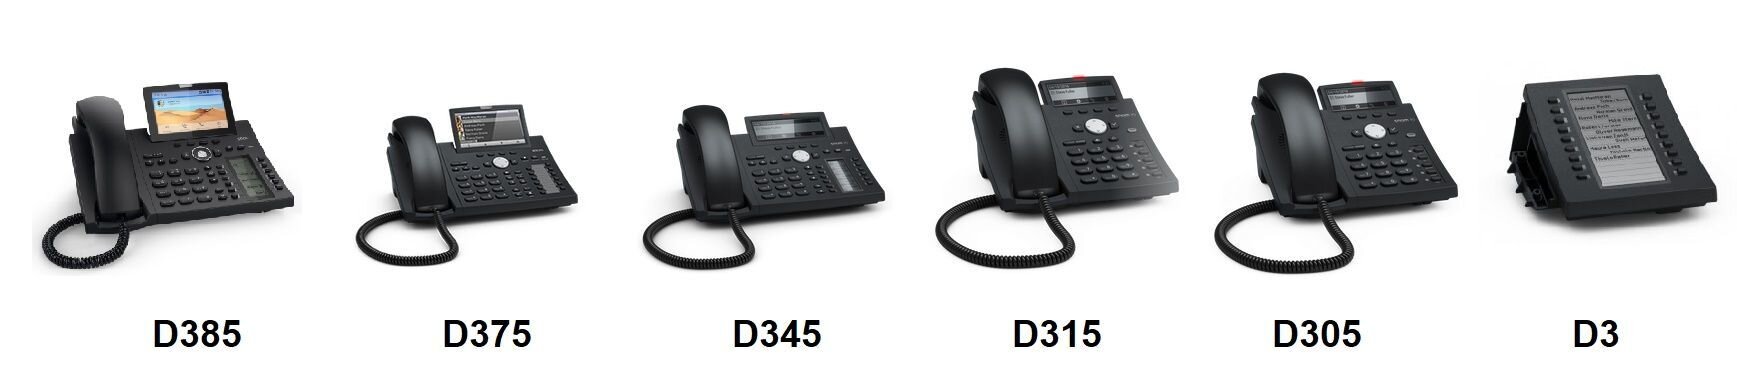 IP-телефоны Snom 3-й серии (D3XX)